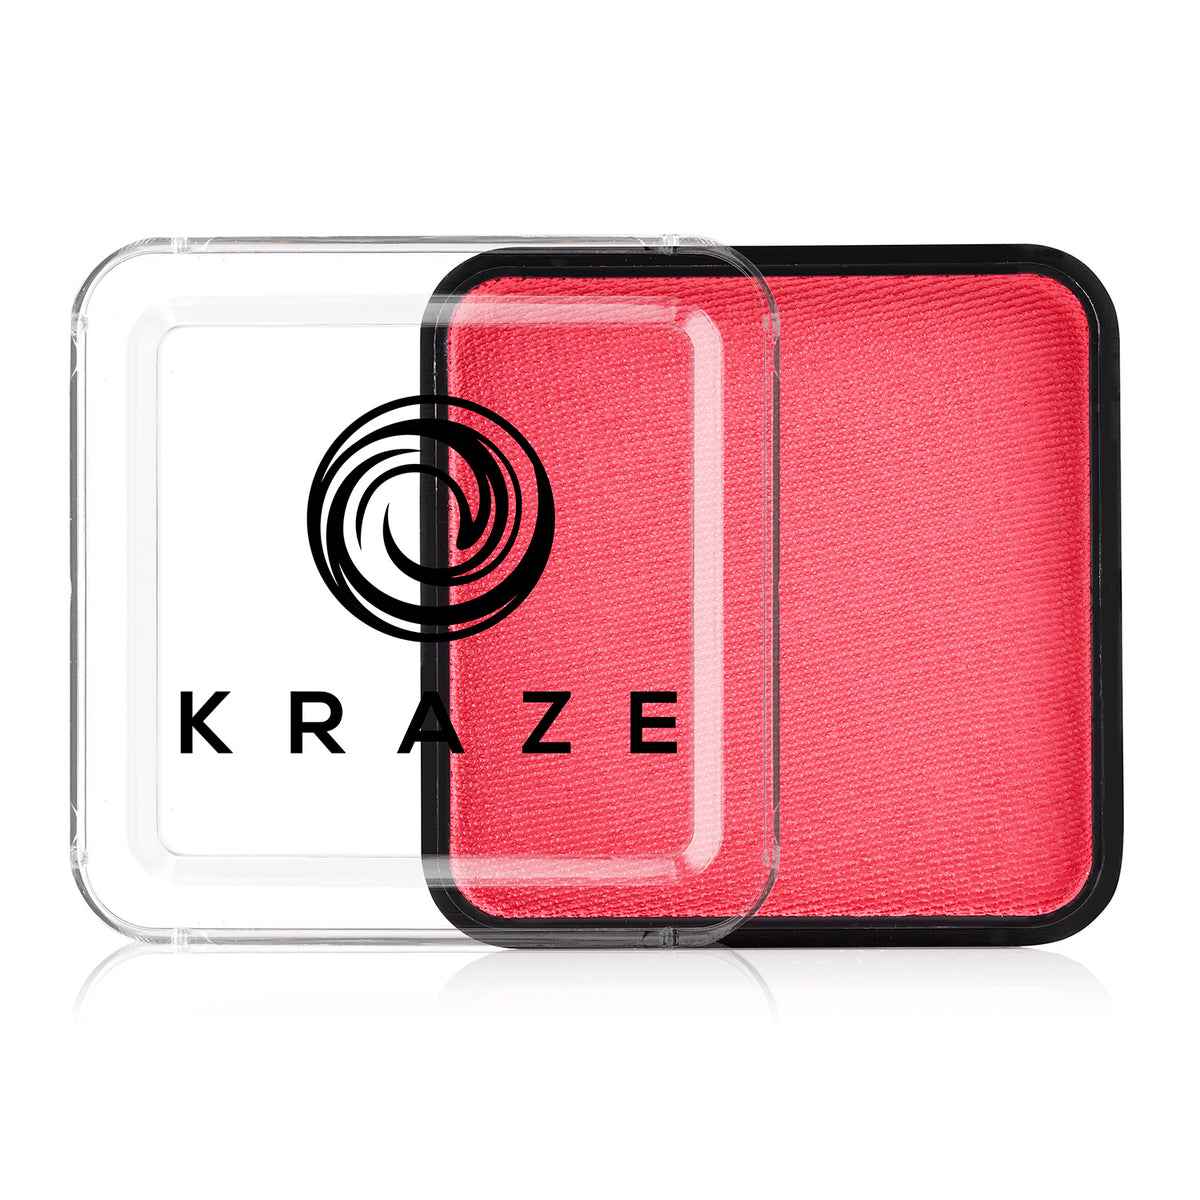 Kraze FX Face Paint - Coral Pink (25 gm)